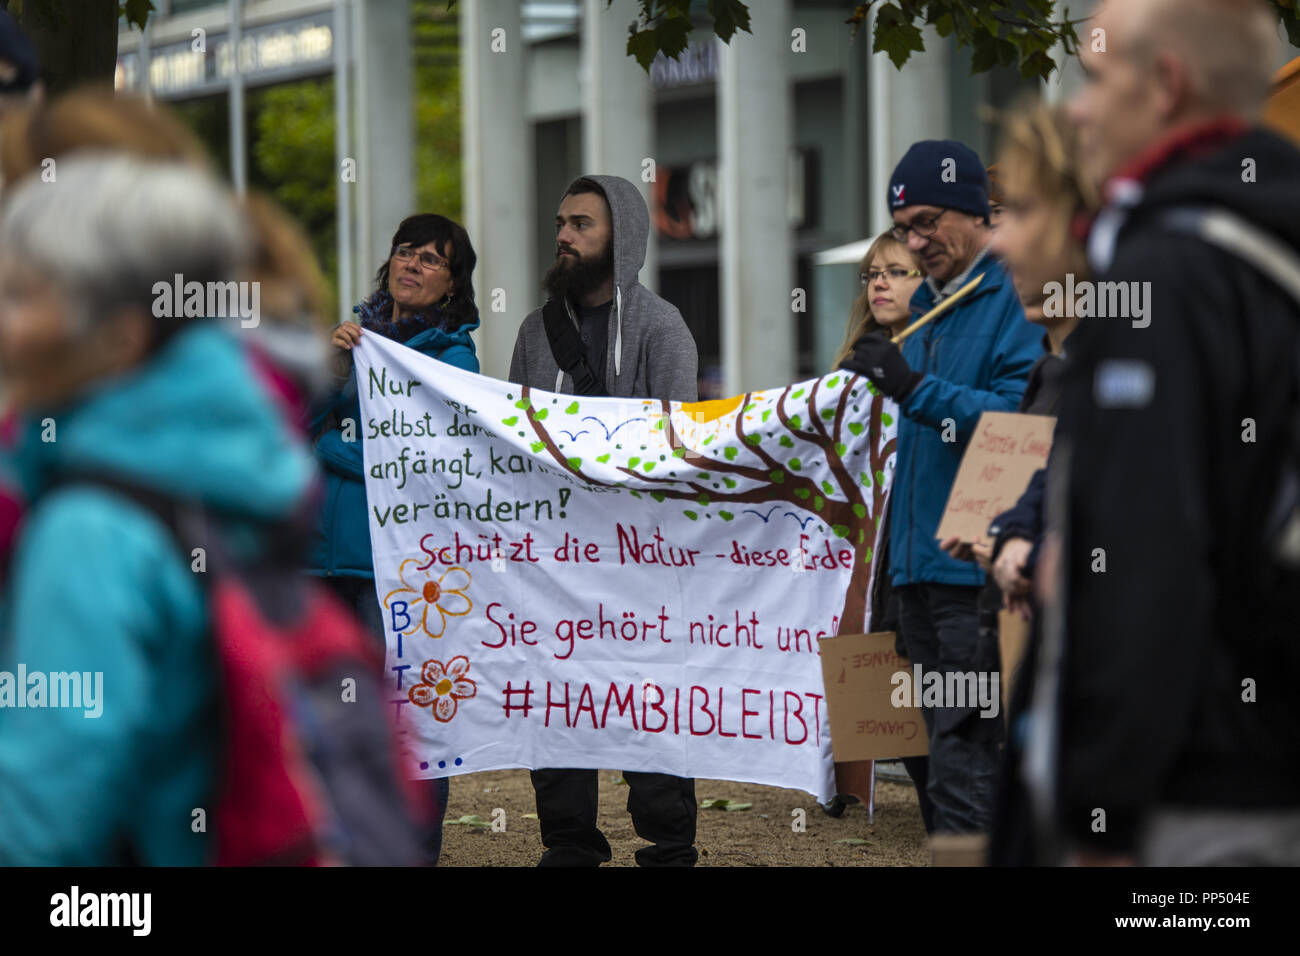 Braunschweig Niedersachsen, Allemagne. 29Th Sep 2018. Aujourd'hui autour de 150 personnes ont manifesté à Braunschweig pour exprimer leur solidarité avec la foresterie et l'Hambach les activistes locaux Crédit : Jannis Grosse/ZUMA/Alamy Fil Live News Banque D'Images